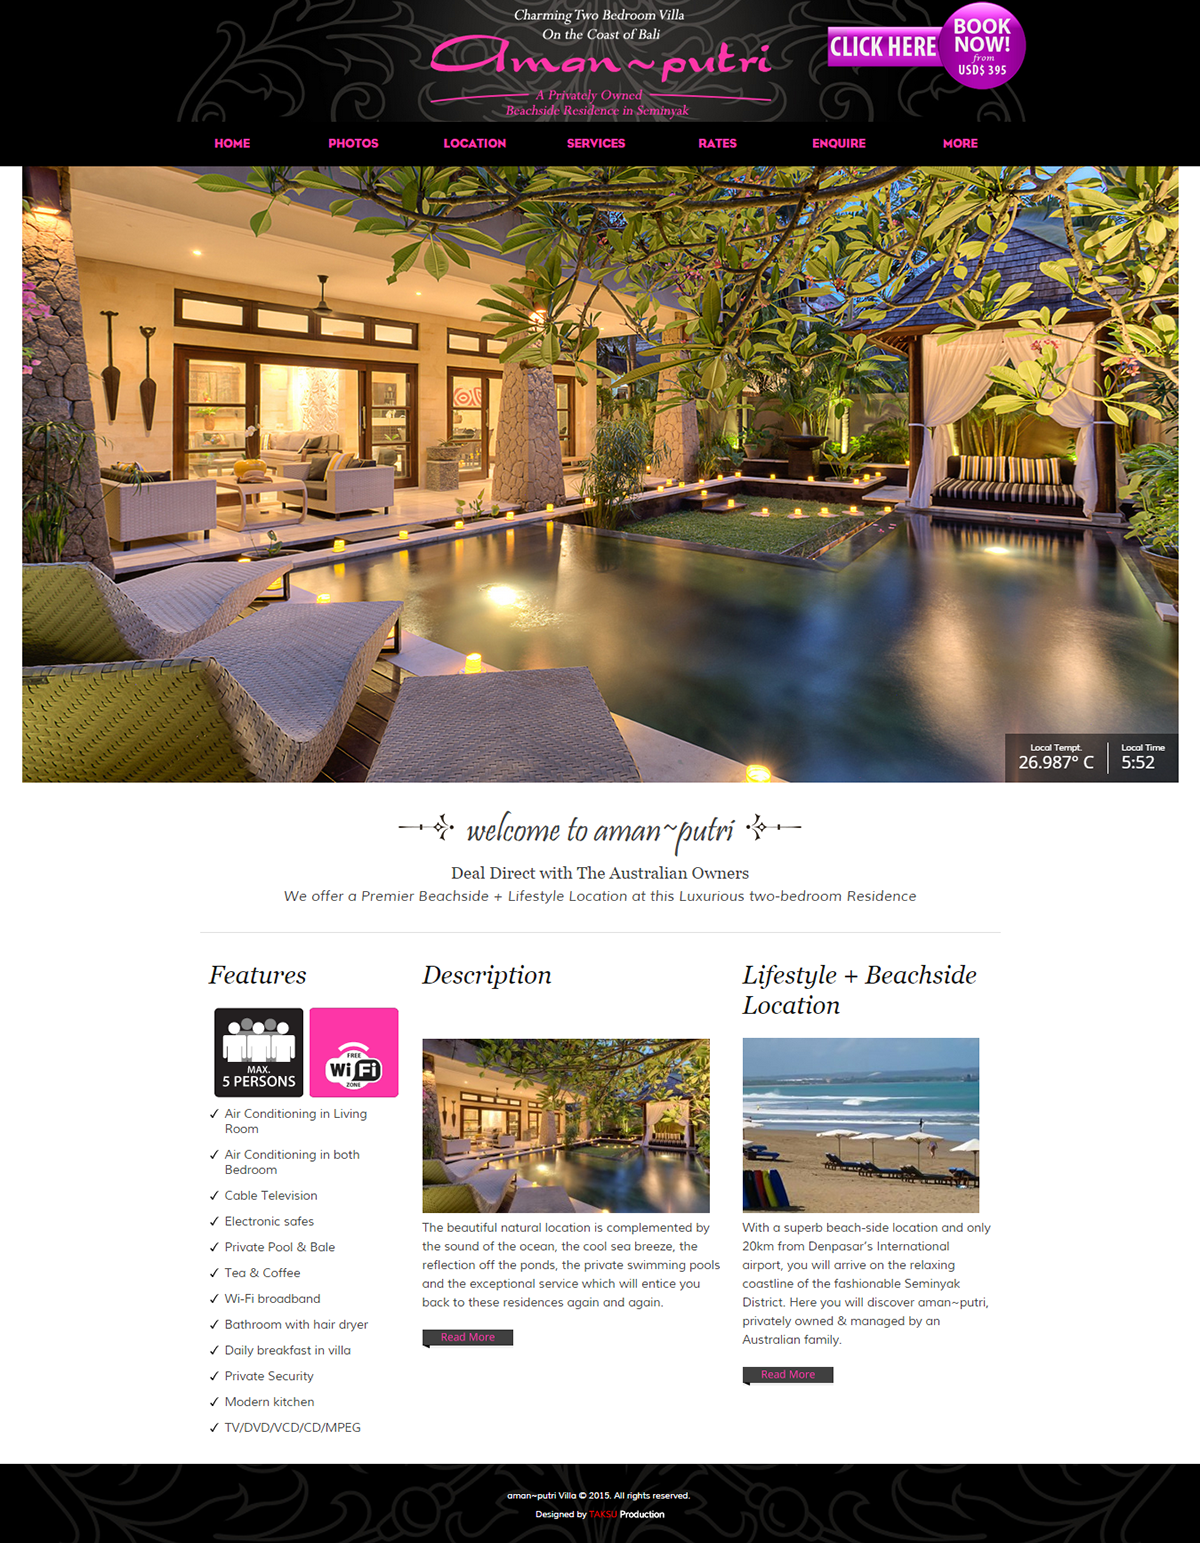 Villa bali company profile company website